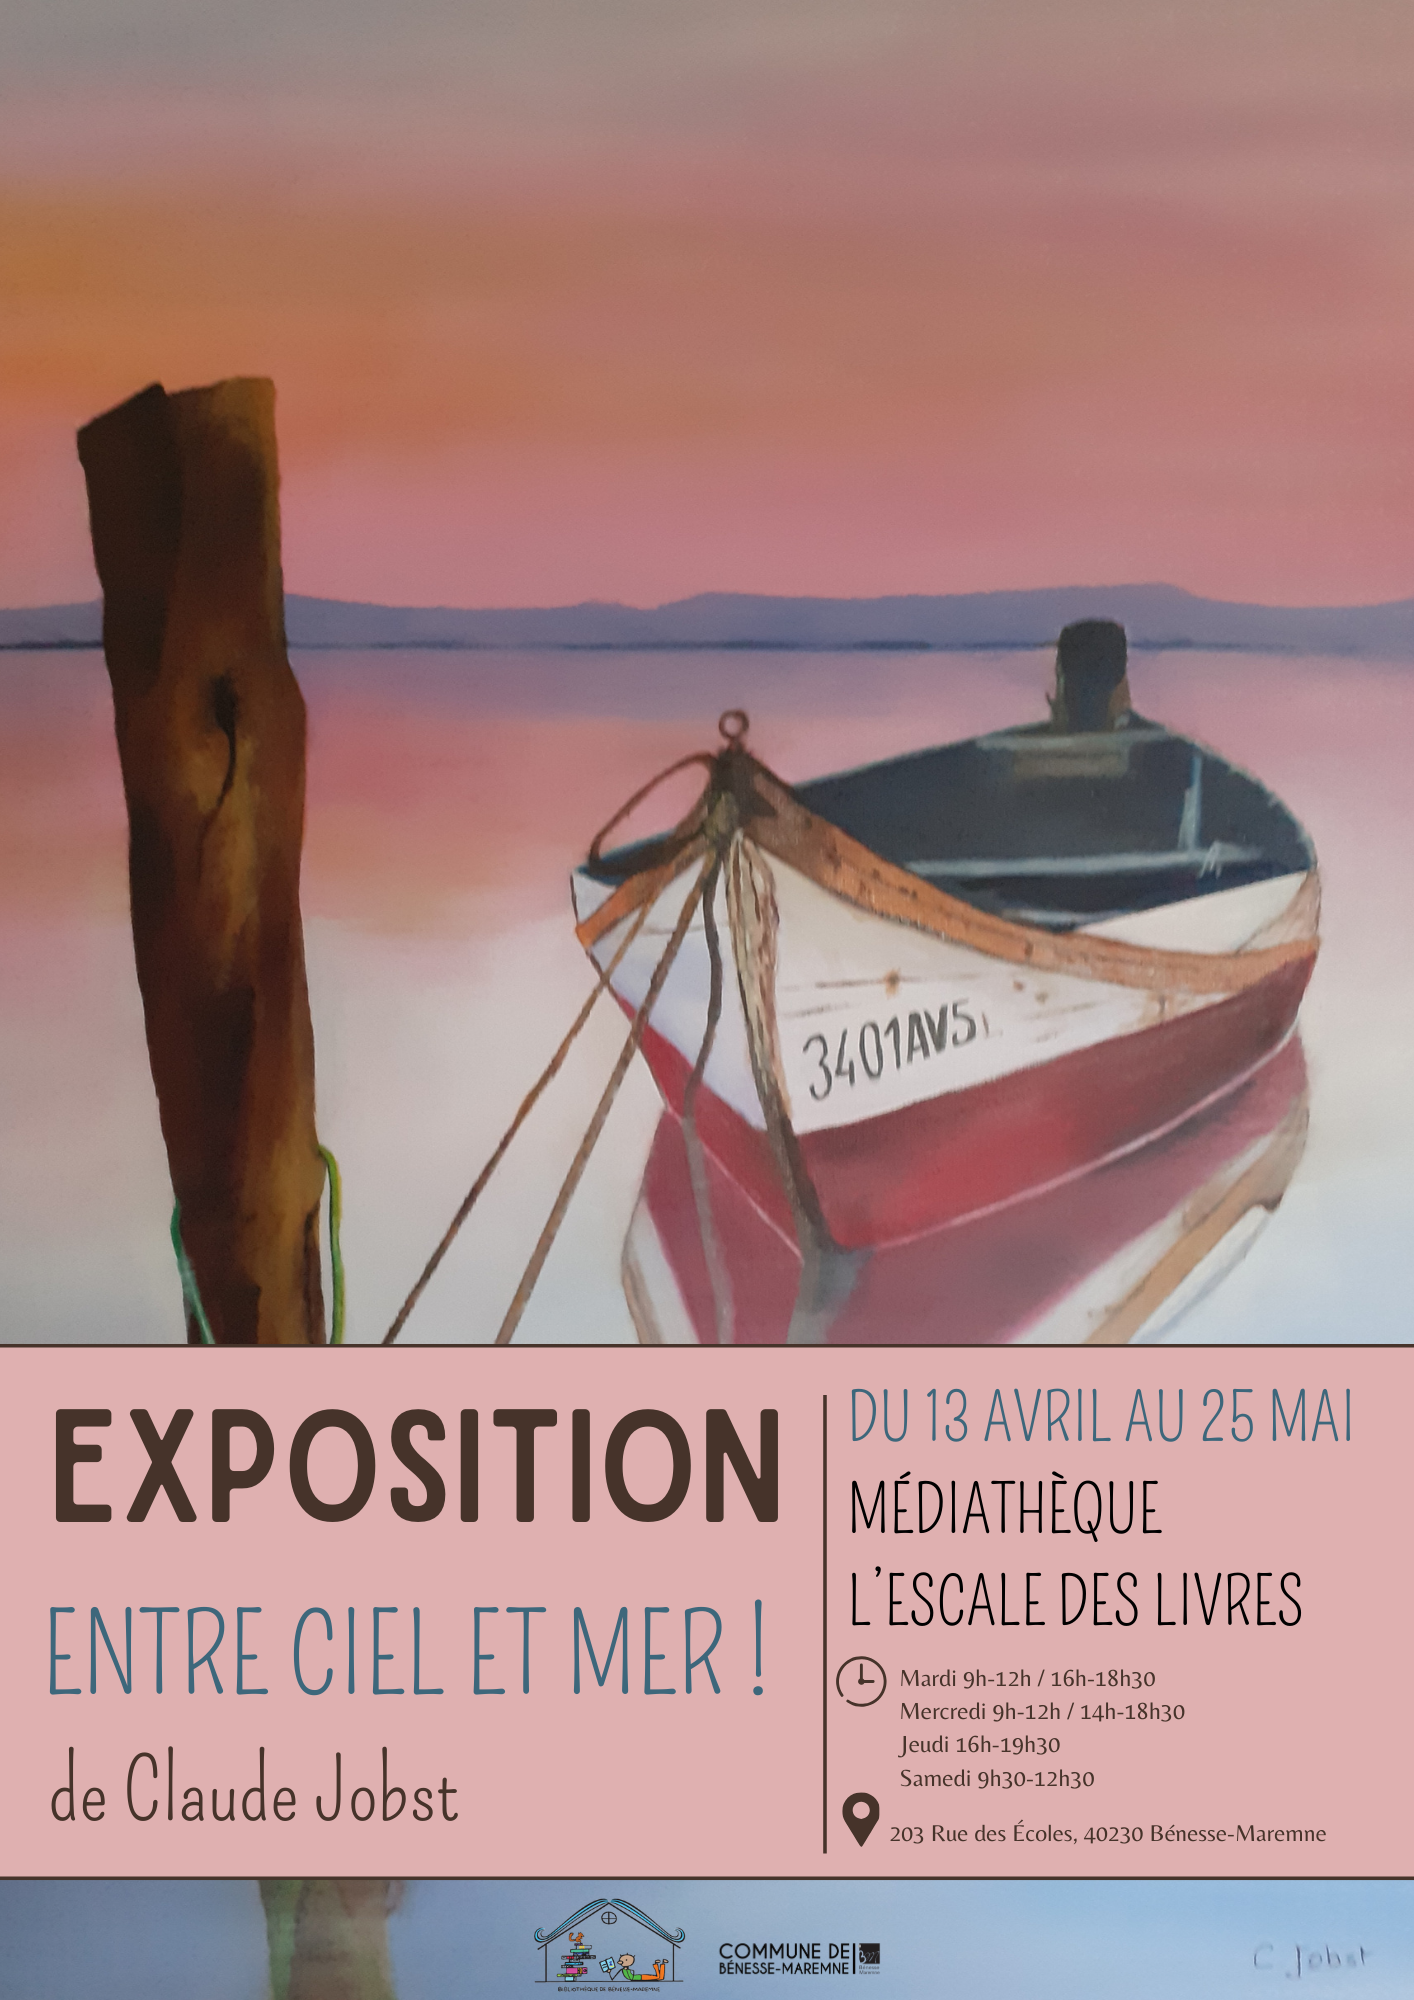 Exposition "Entre ciel et mer!" 